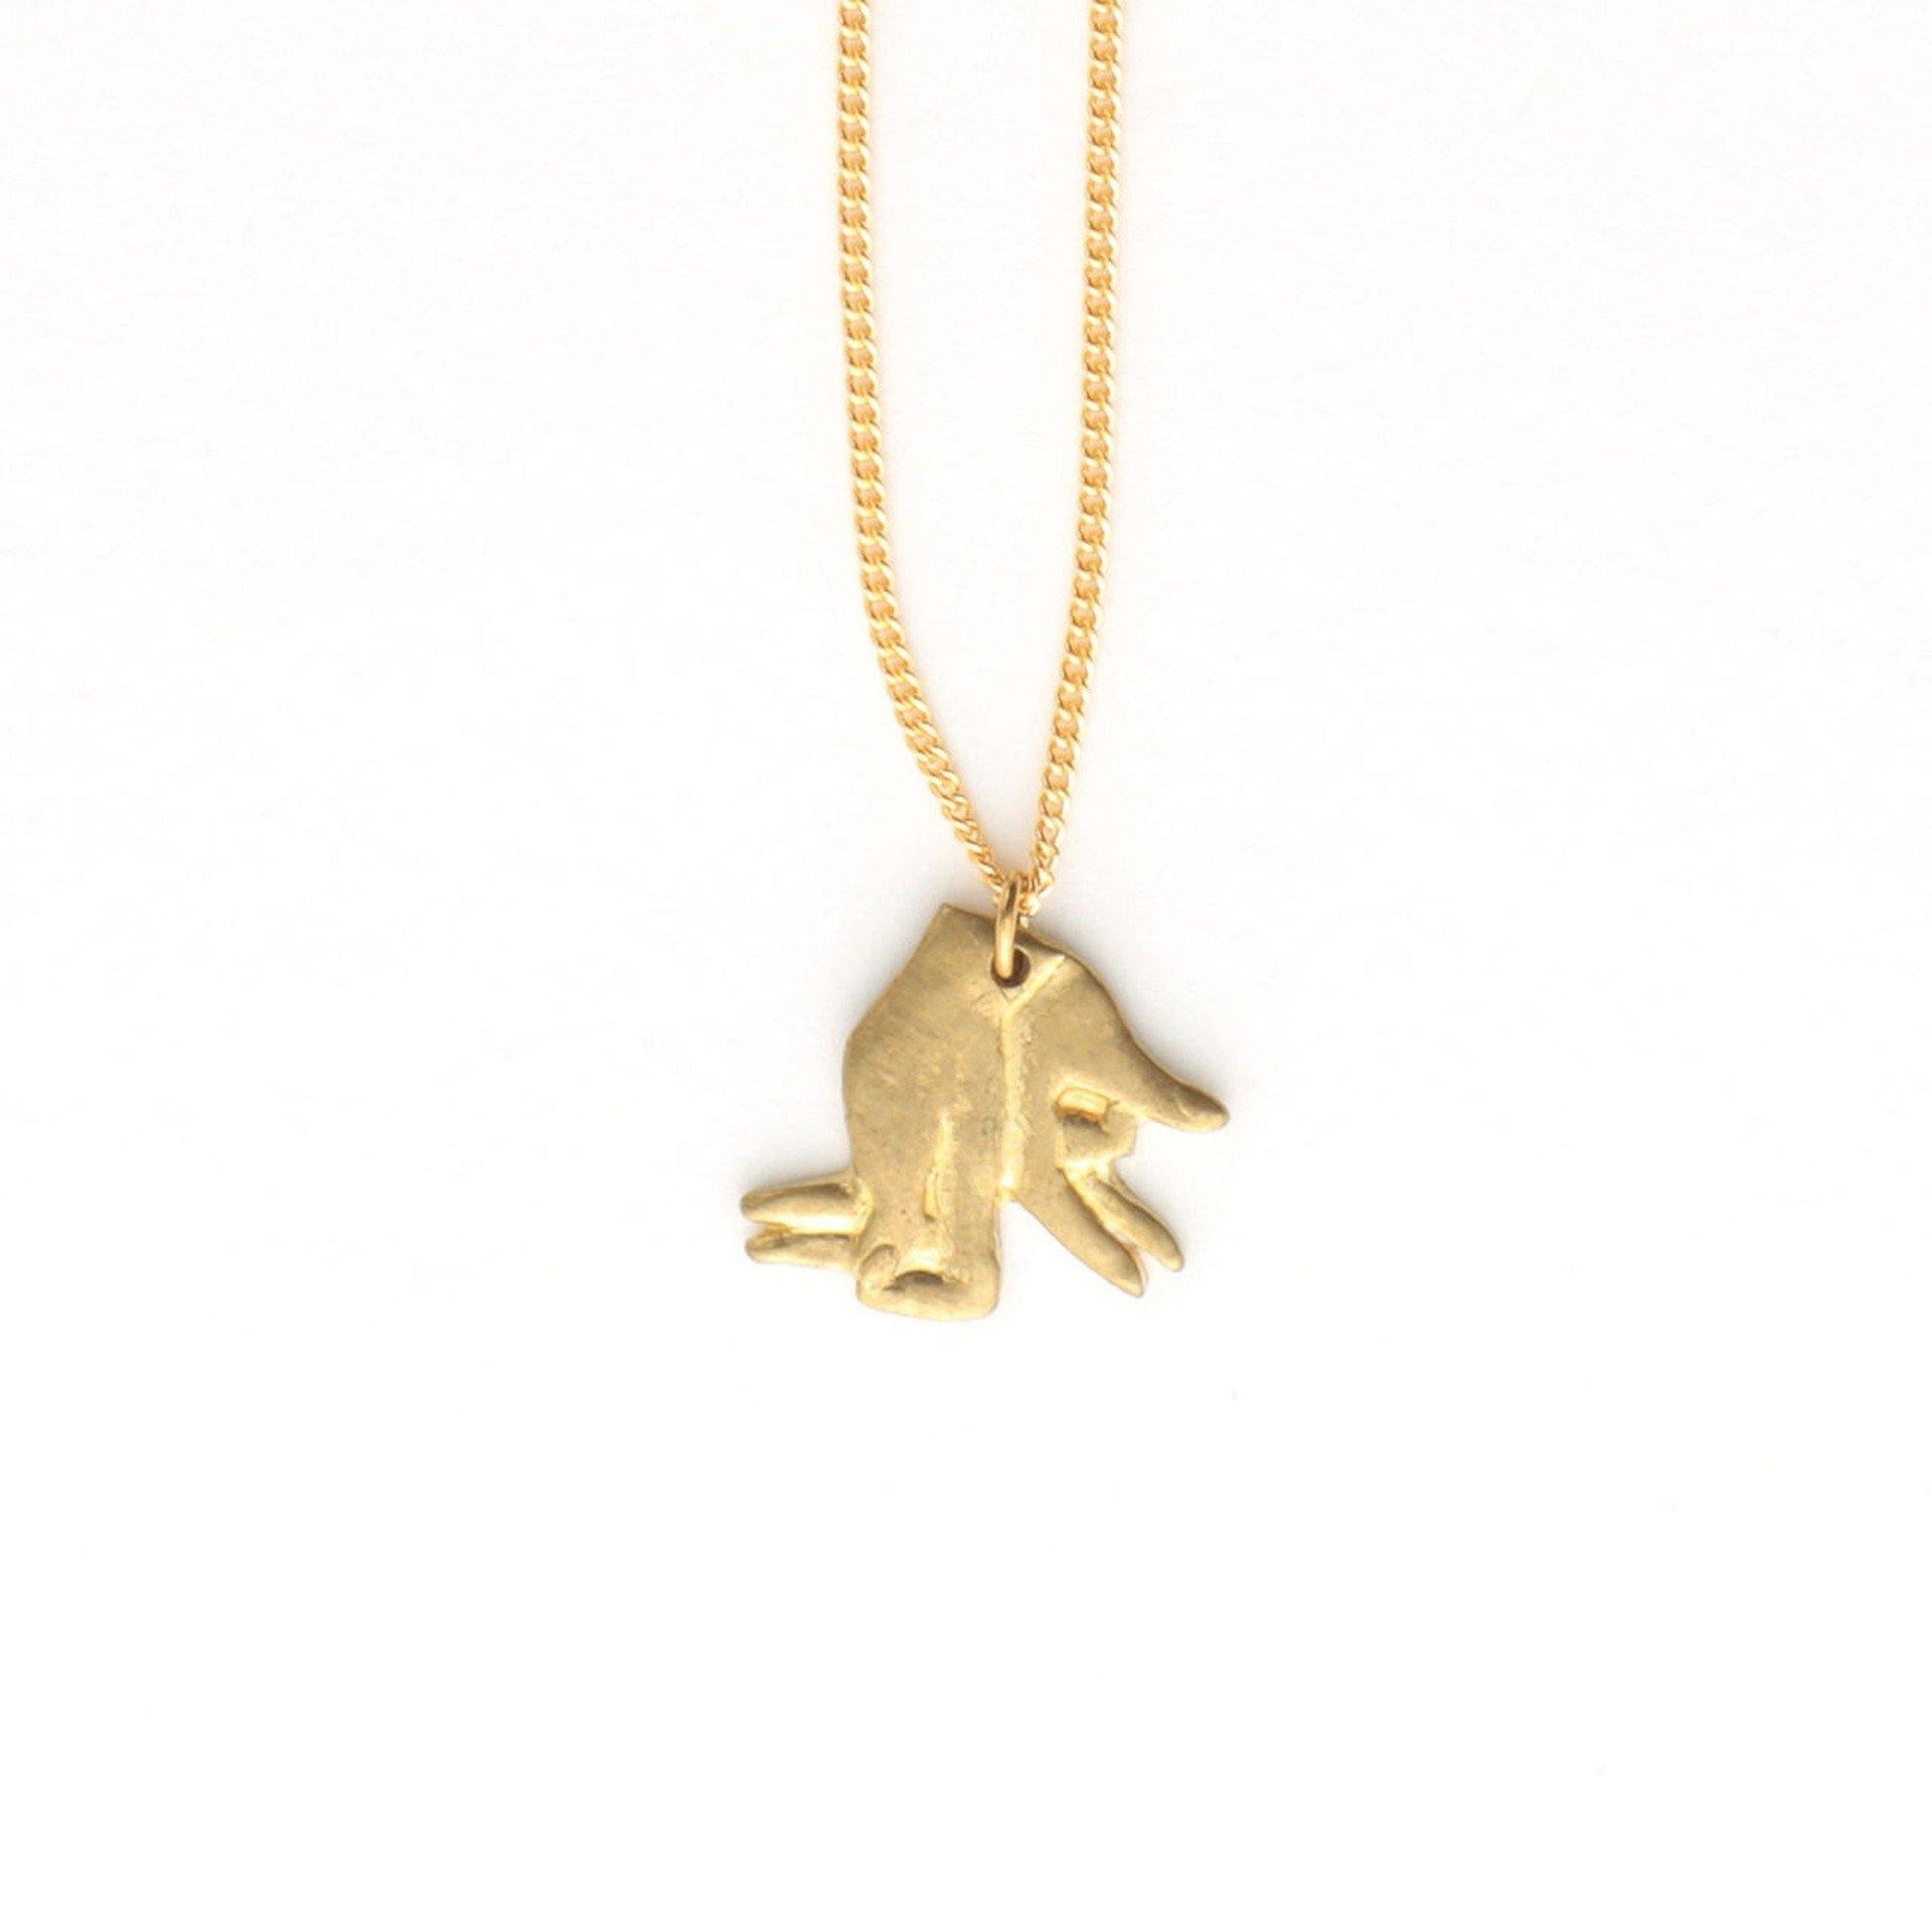 Aquvii(アクビ) | 手で作る影絵をモチーフにしたネックレス Hand shadow Necklace [aq.010] - Sopwith camel